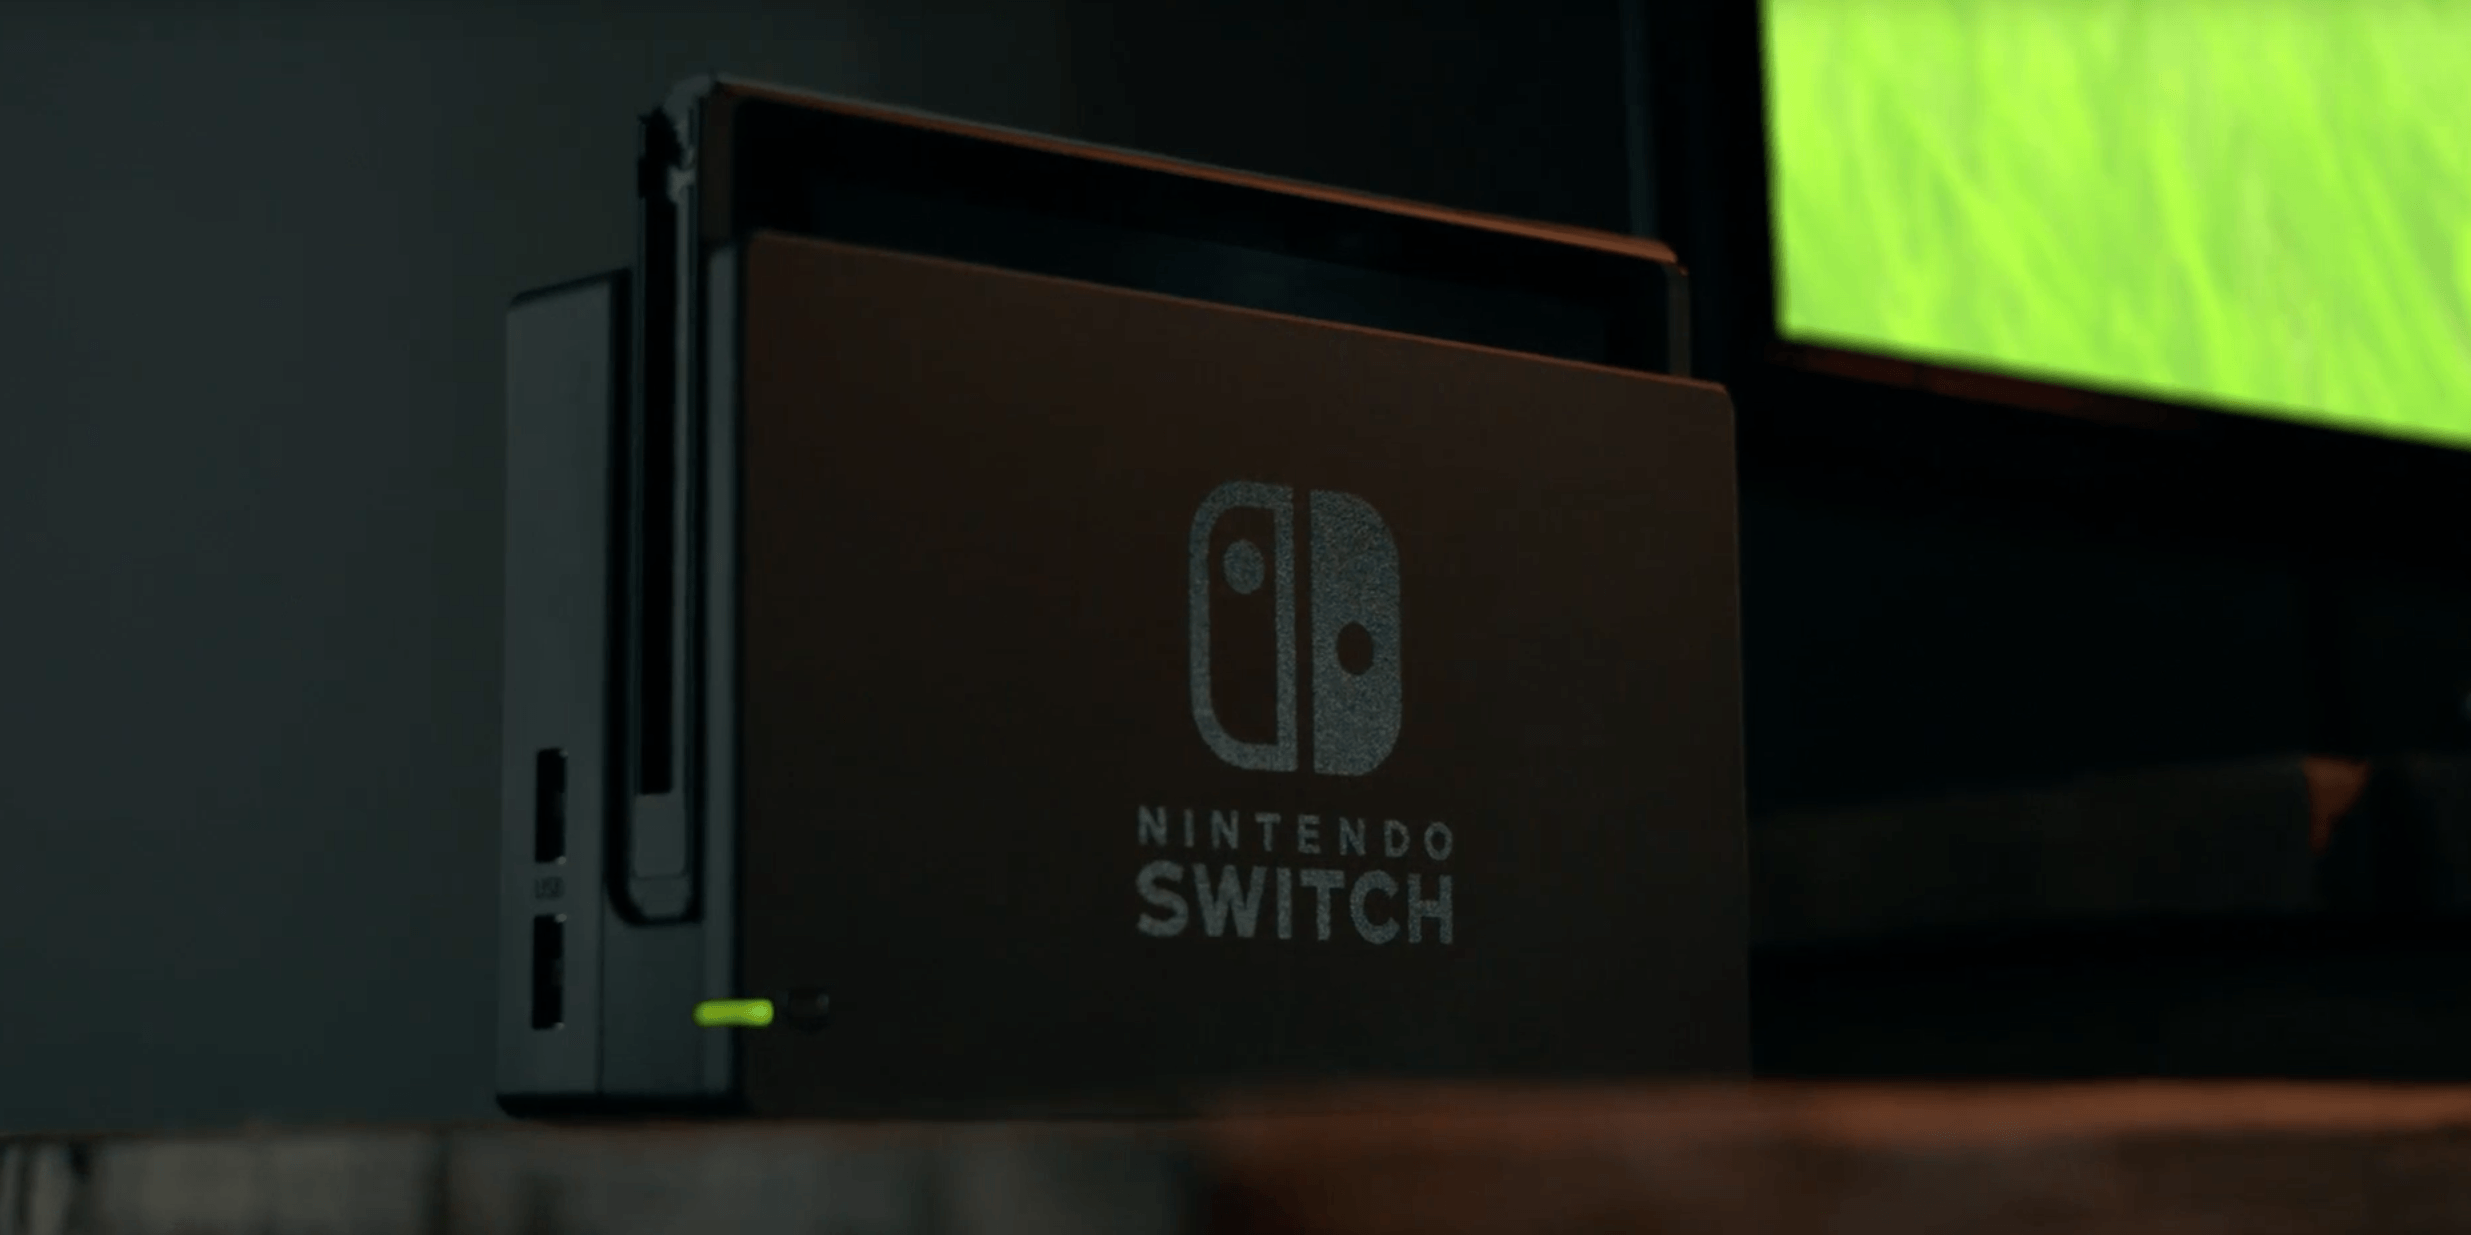 Prix, date de sortie, jeux de lancement, toutes les infos sur la Nintendo Switch